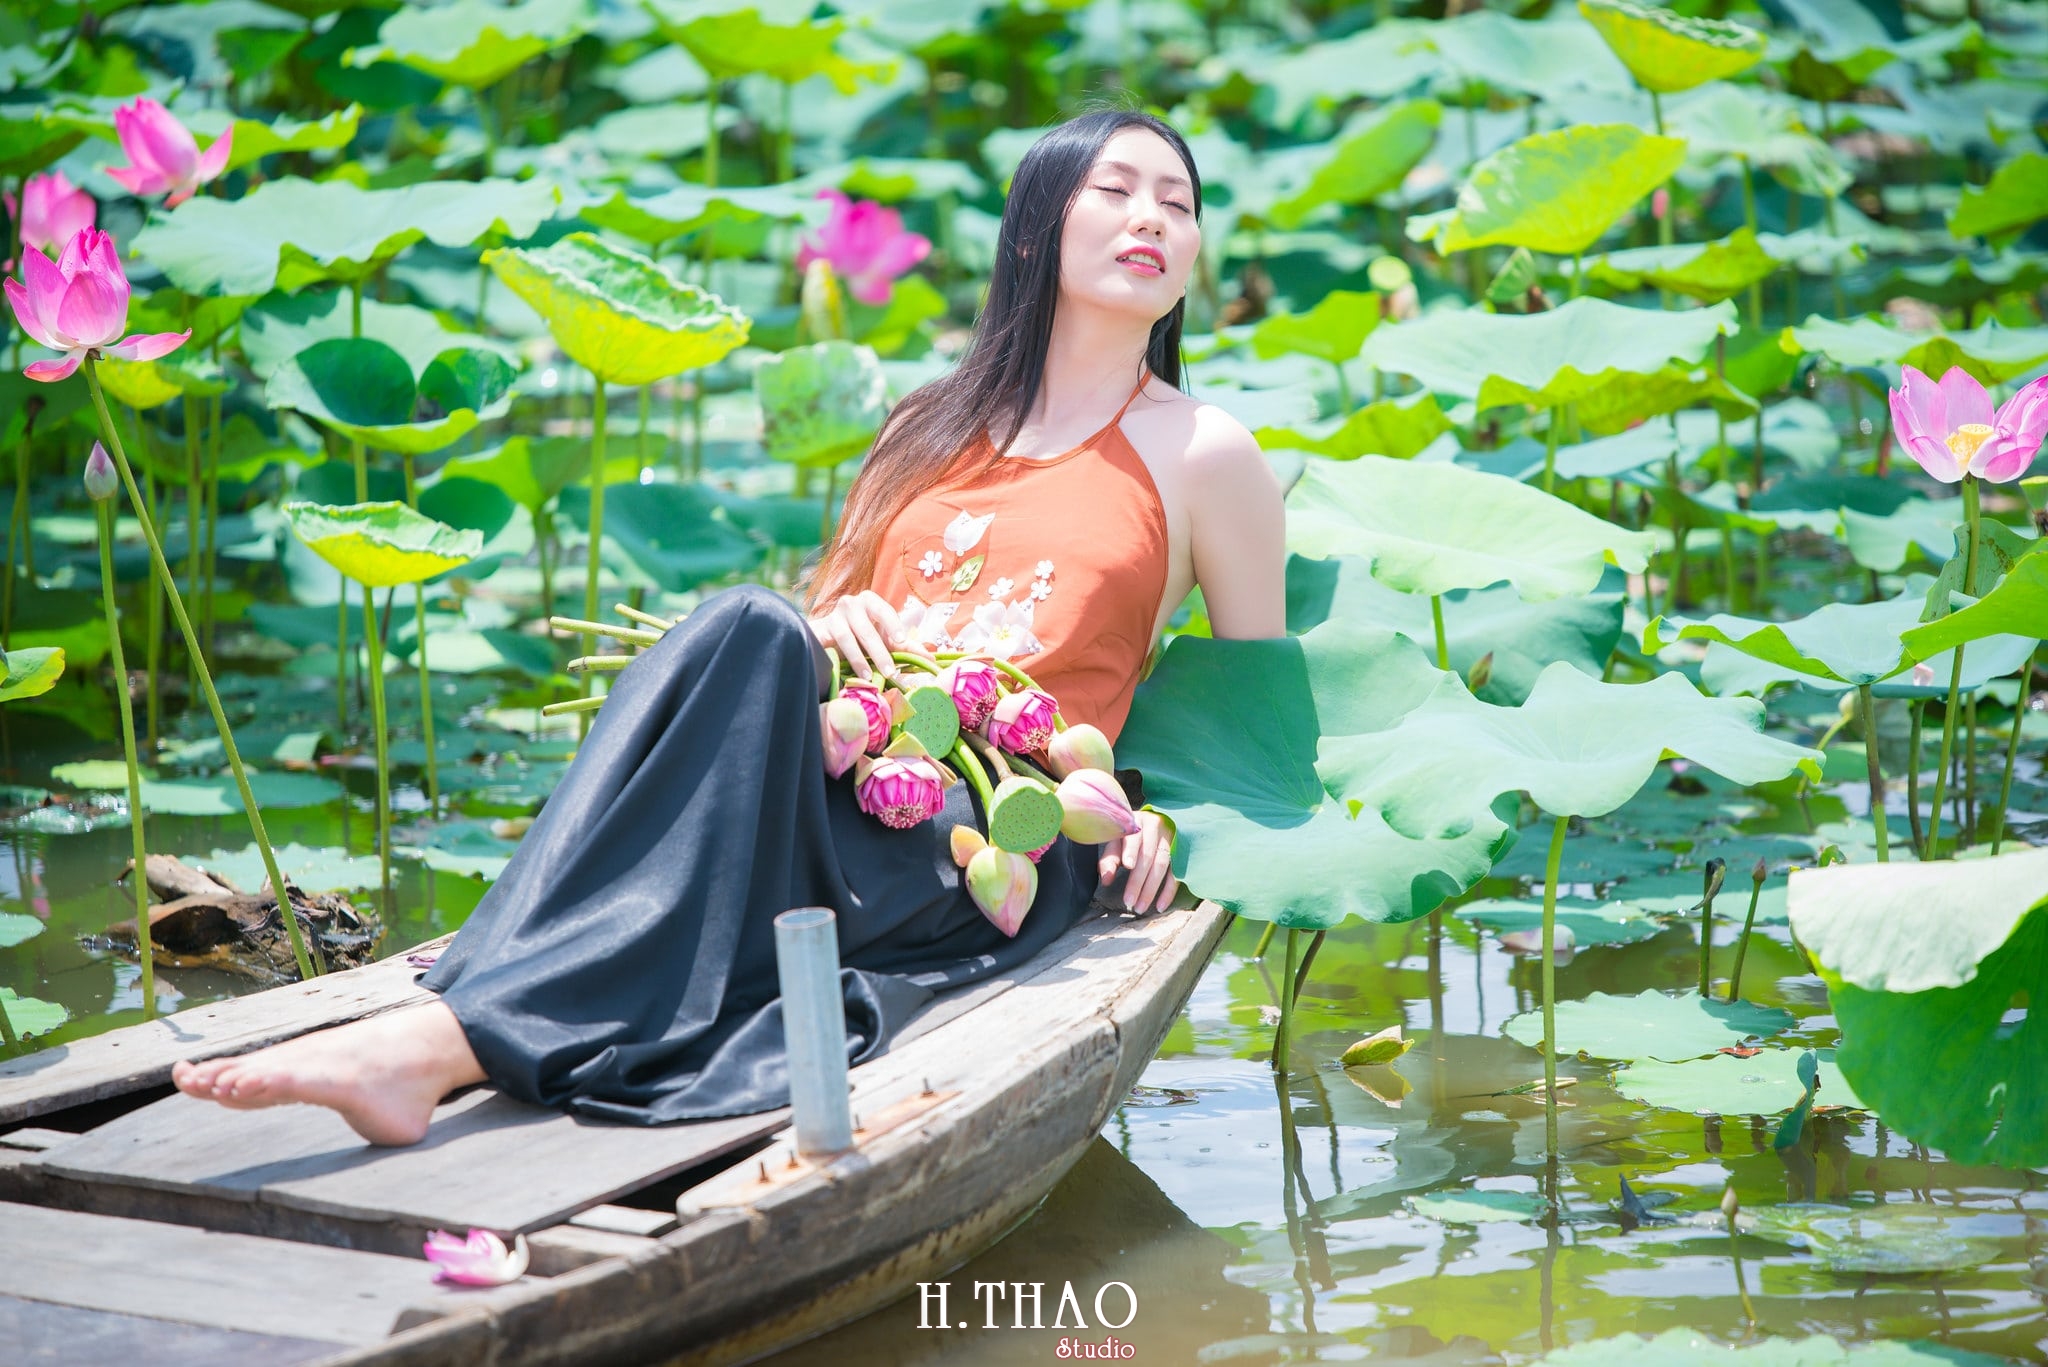 ao yem hoa sen 3 - Album ảnh chụp áo yếm với hoa sen đẹp dịu dàng - HThao Studio